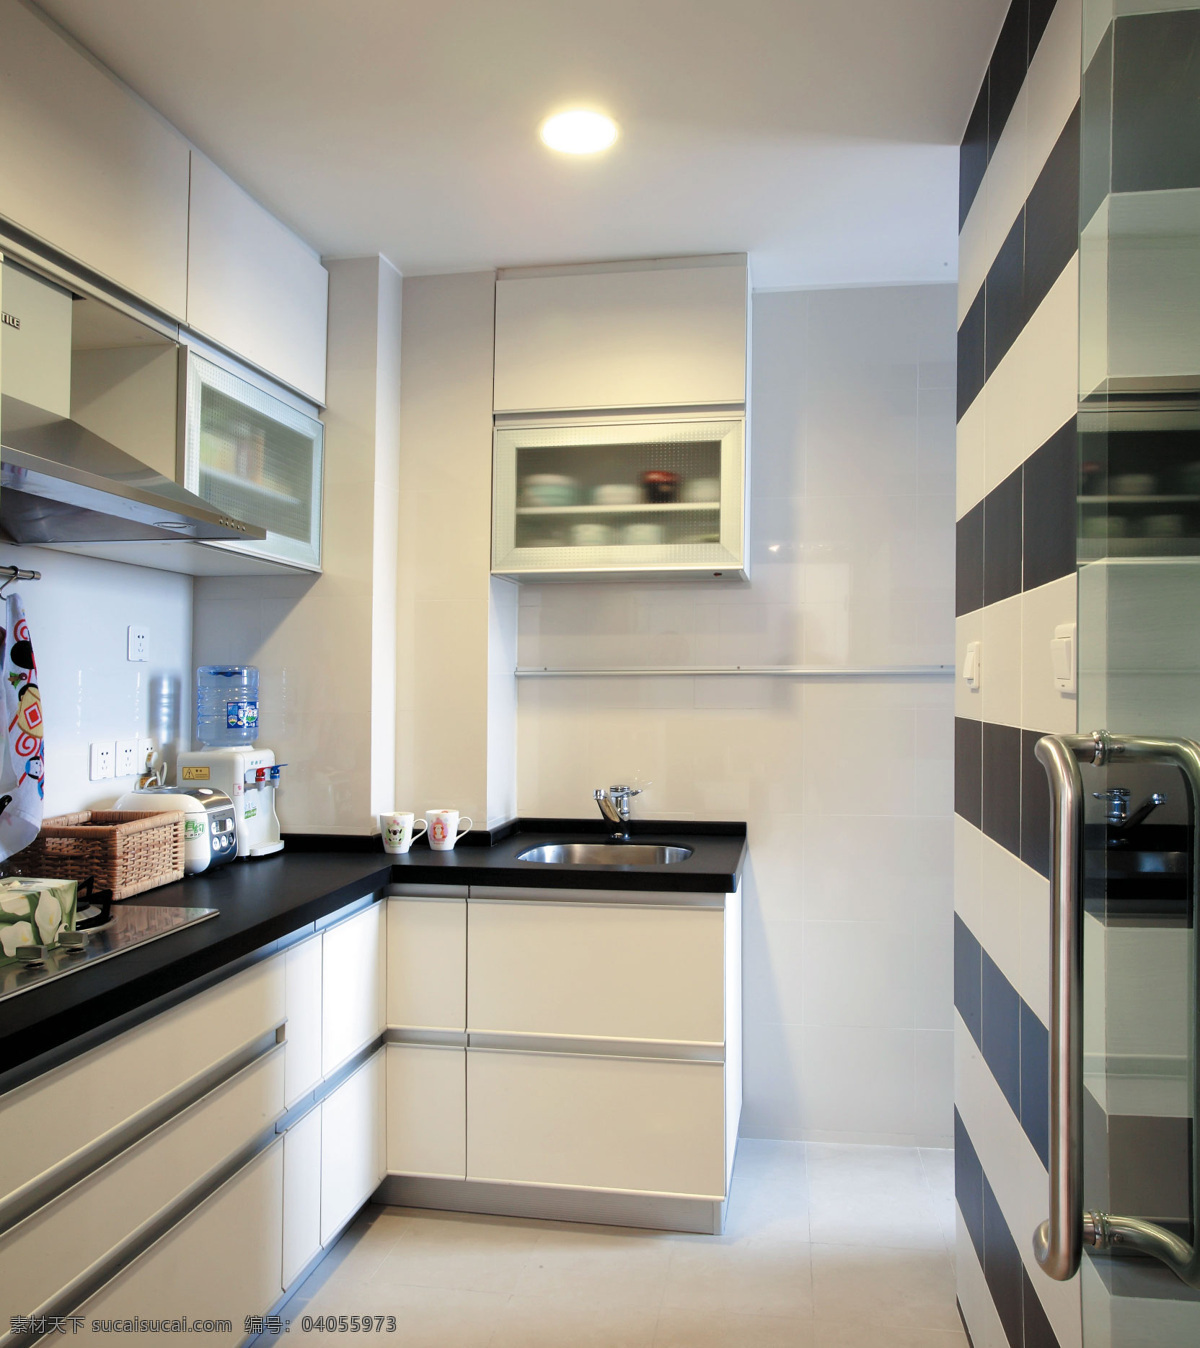 家装设计 案例 白色 厨房 简约 摄影图 室内 图片库 家居装饰素材 室内设计